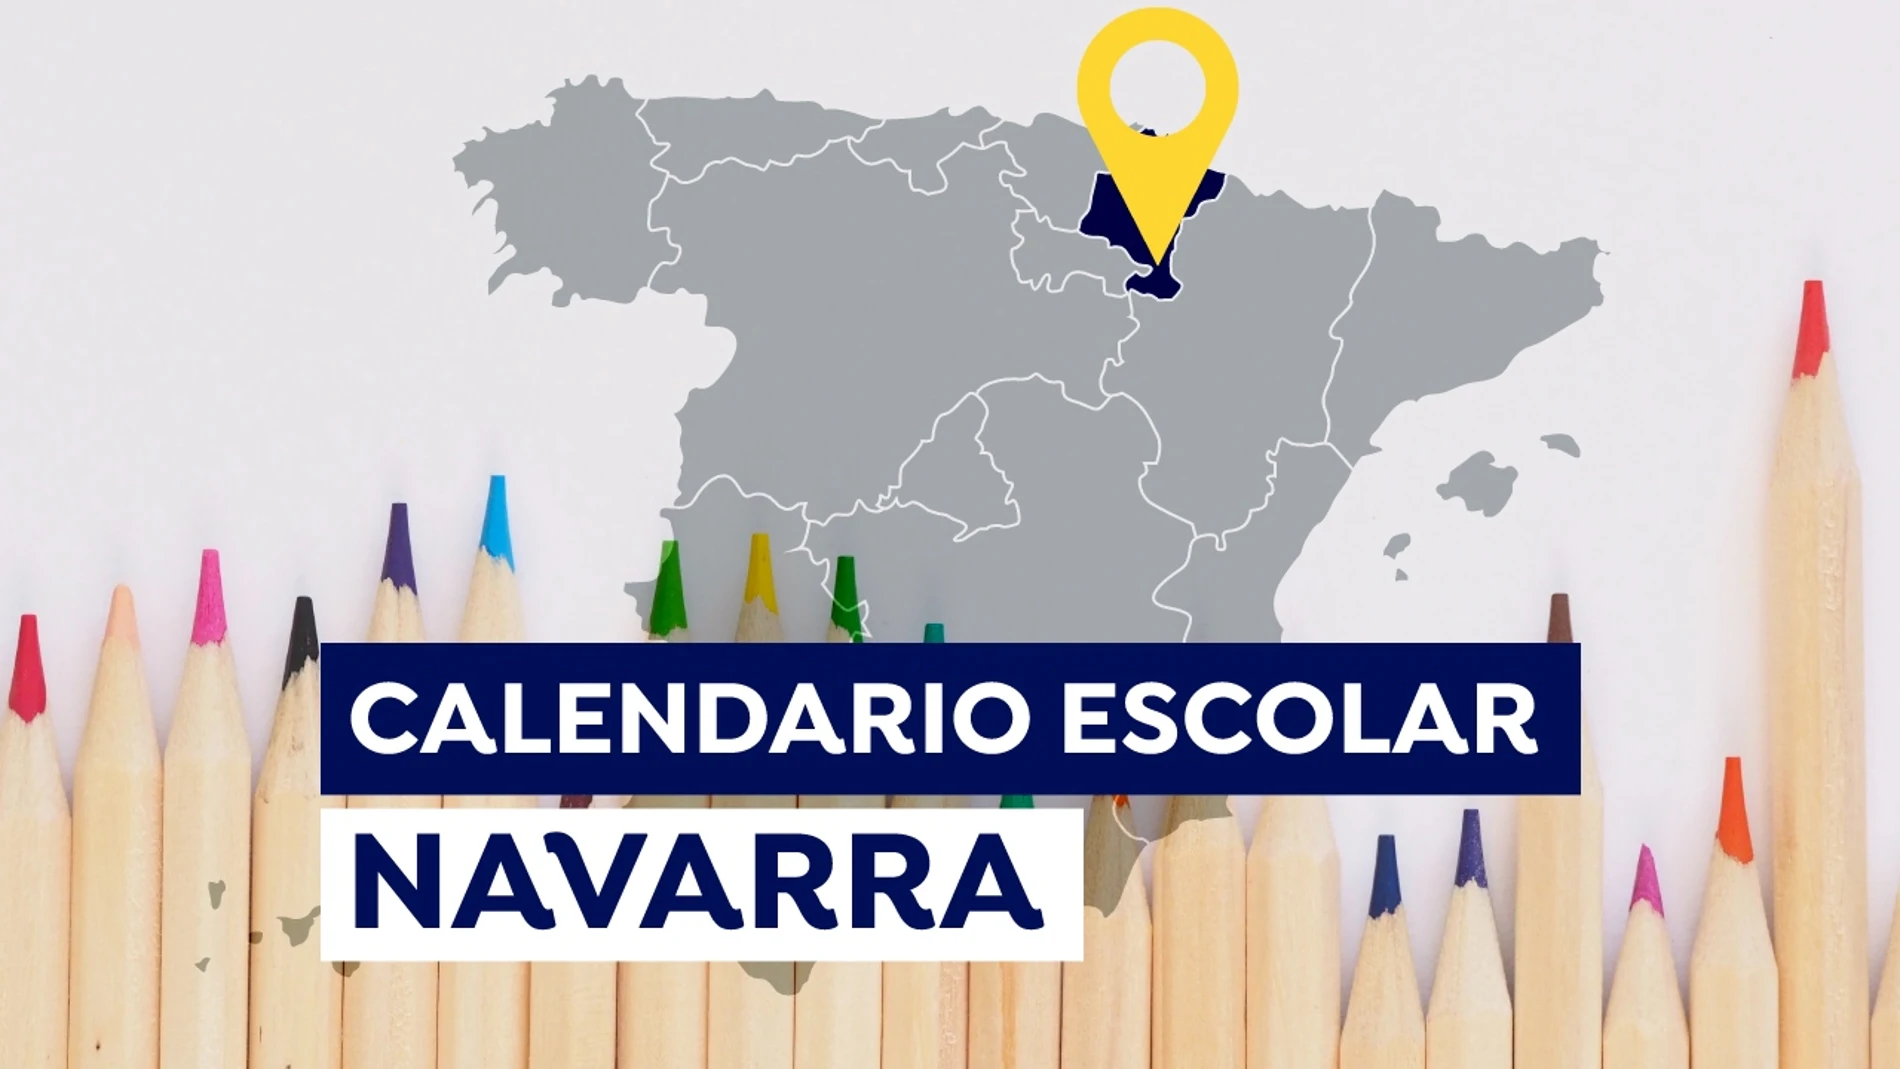 Calendario escolar 2021-2022 en Navarra